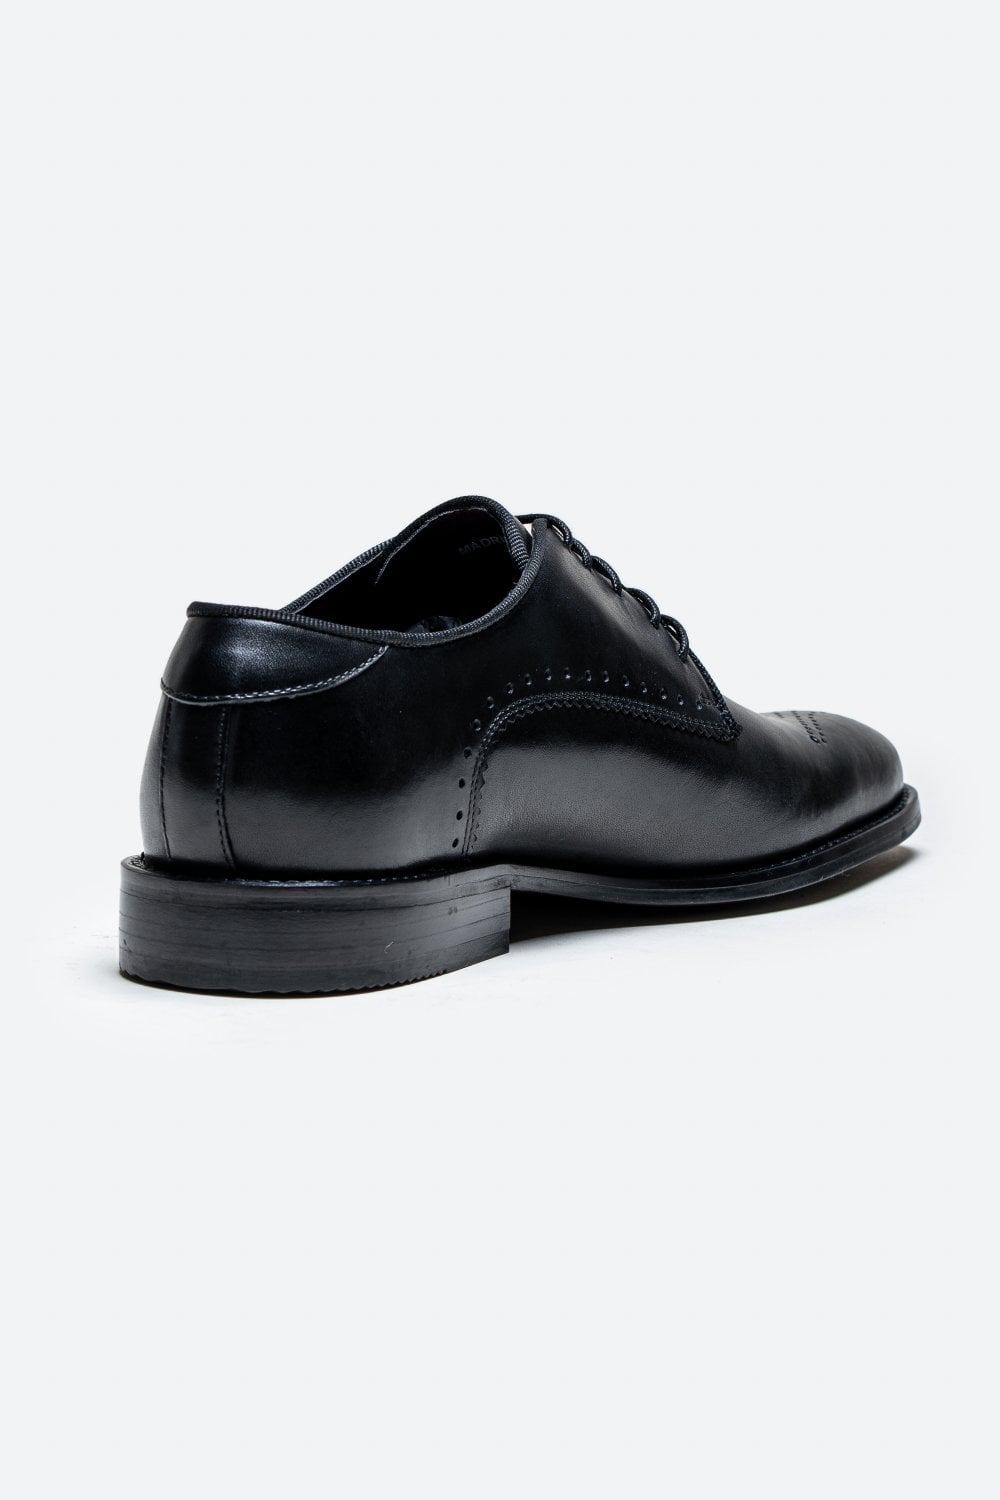 Cavani Madrid Schoenen Black - Wingtip Brogue - schoenen